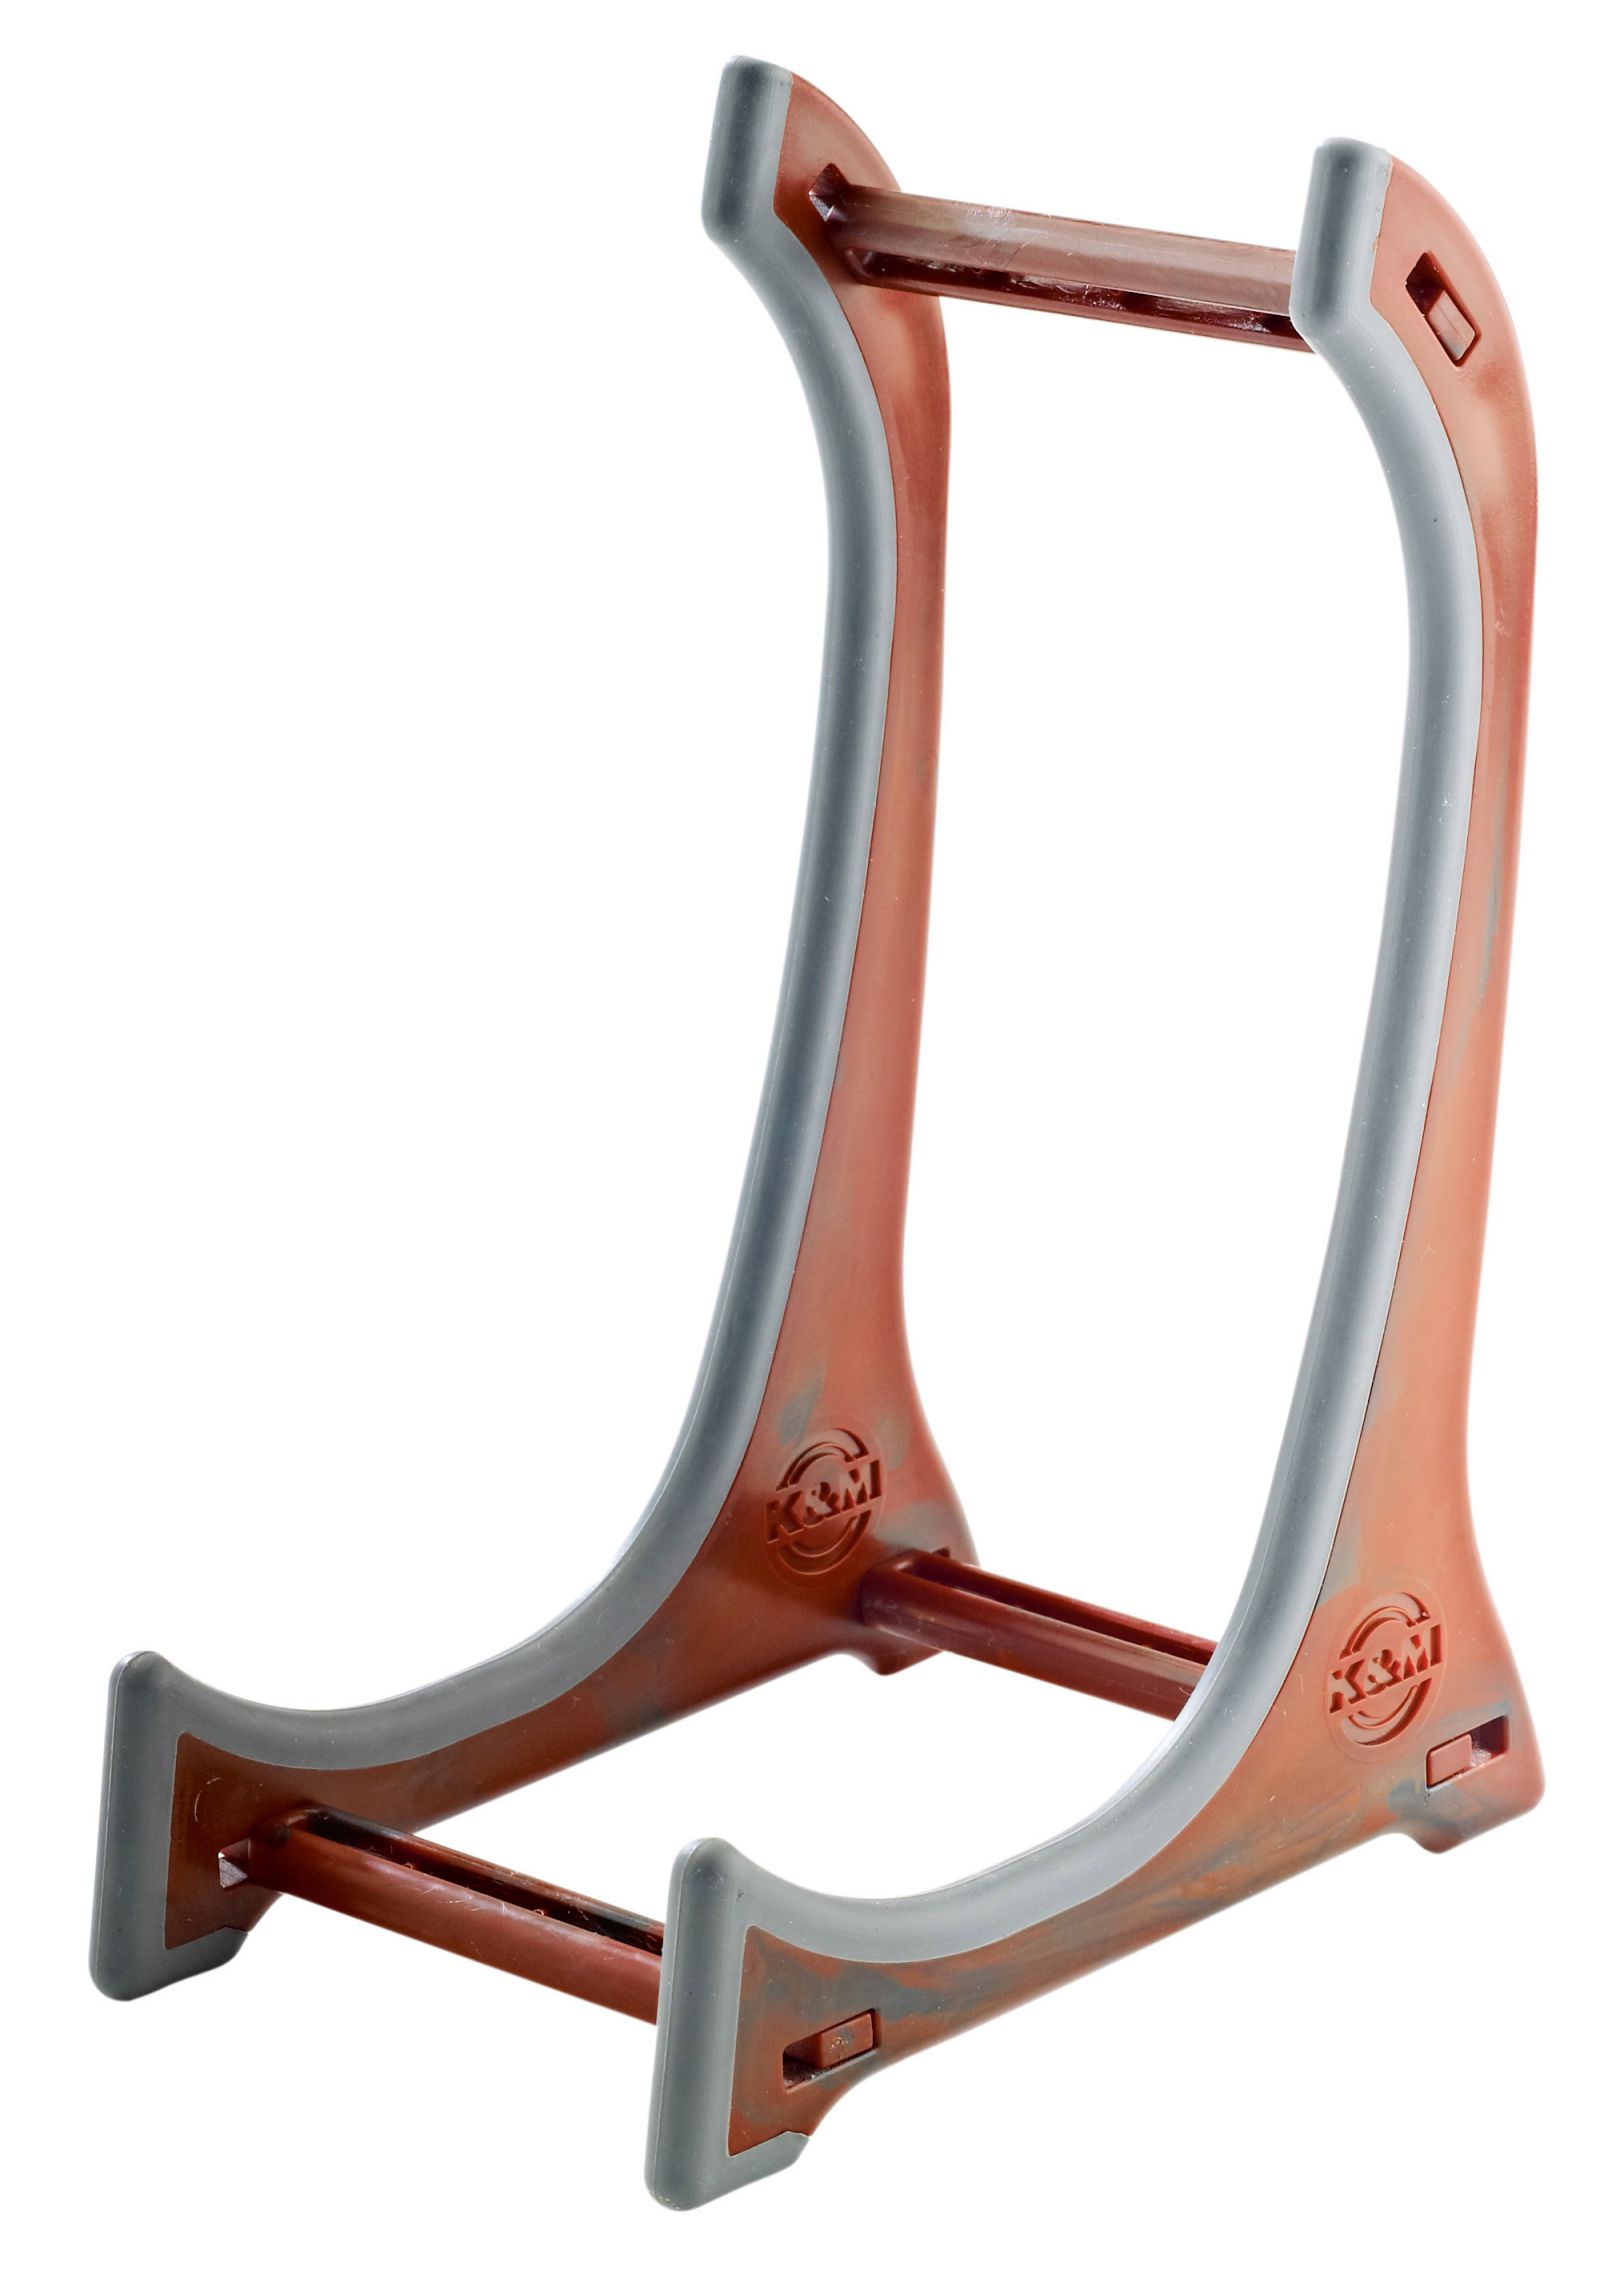 An image of K&M Ukulele / Violin Display Stand | PMT Online